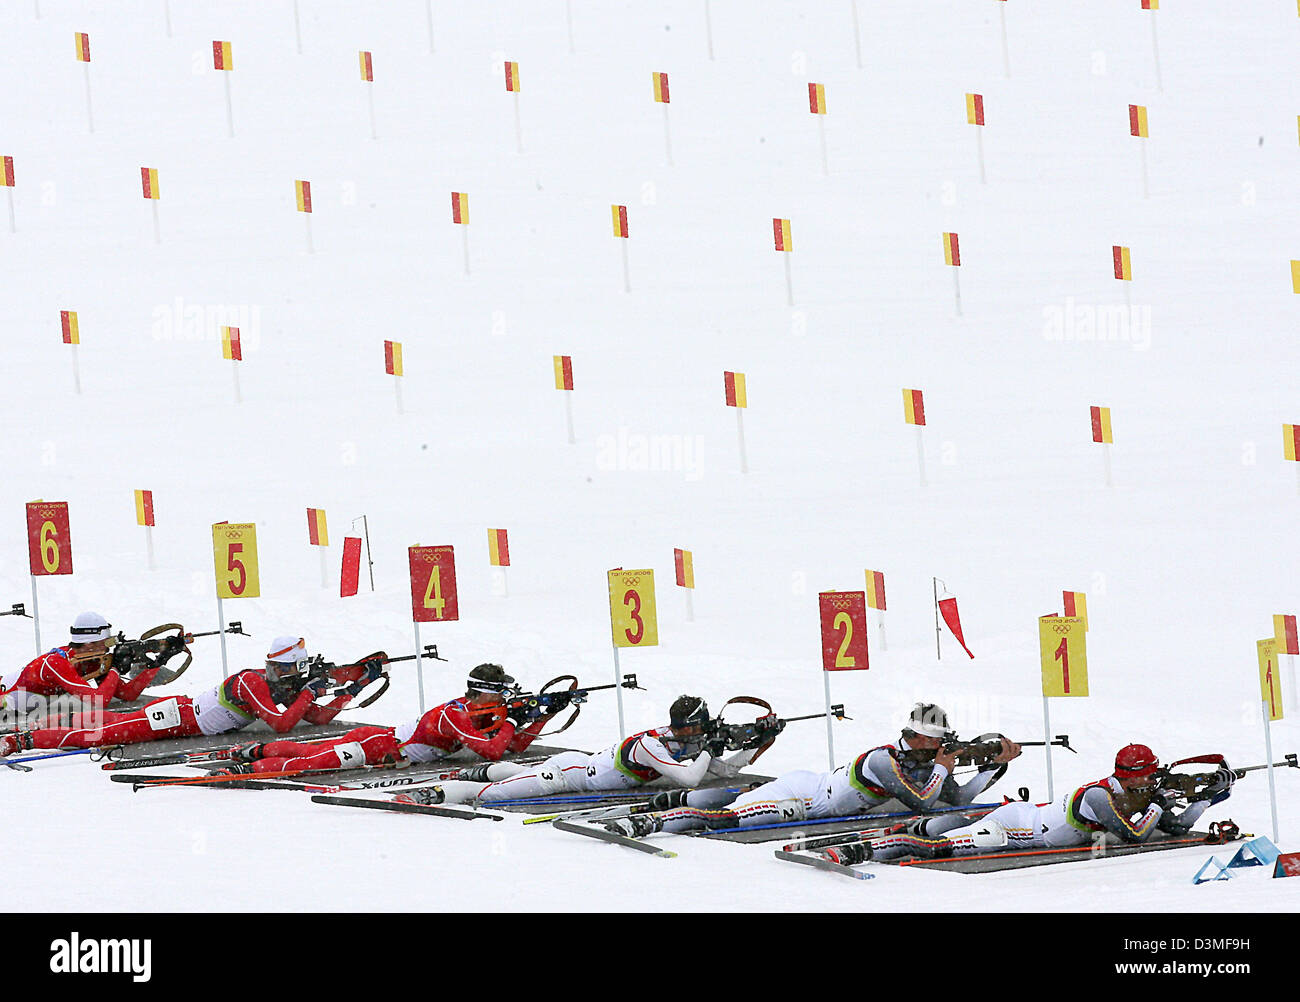 Biatleti sparare mentre giaceva a terra presso il poligono di tiro durante la 15 km sprint di massa presso i Giochi Olimpici Invernali a San Sicario, Italia, sabato 25 febbraio 2006. Medaglia d'oro Michael Greis con il numero 1 è raffigurato nella parte anteriore (R) accanto a Sven Fischer. Foto: Martin Schutt Foto Stock